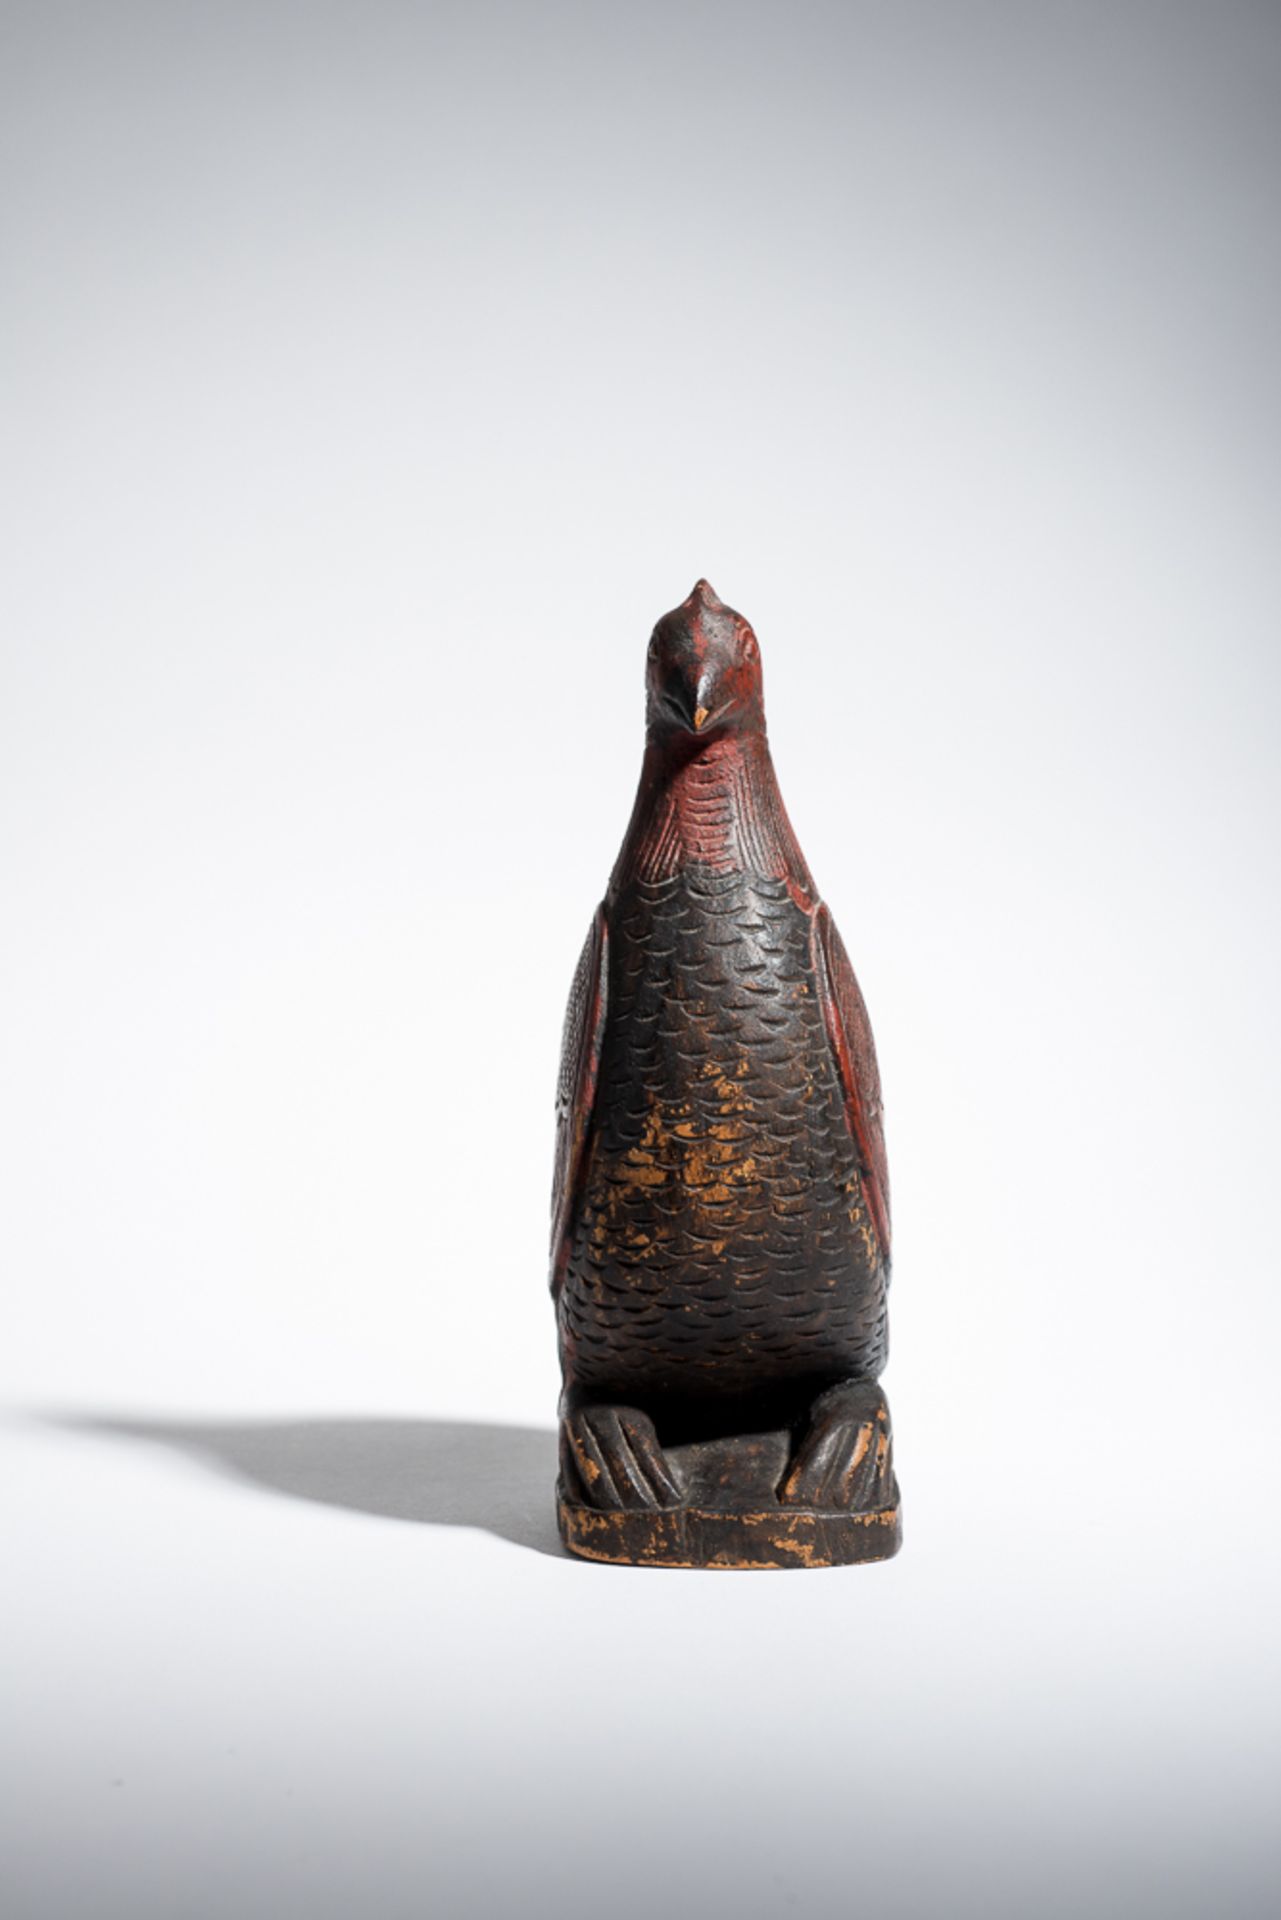 VOGEL (BEHÄLTER)
Holz mit Bemalung. SüdostasienVollplastischer Vogel auf Basis, großes, dekorativ - Bild 3 aus 4